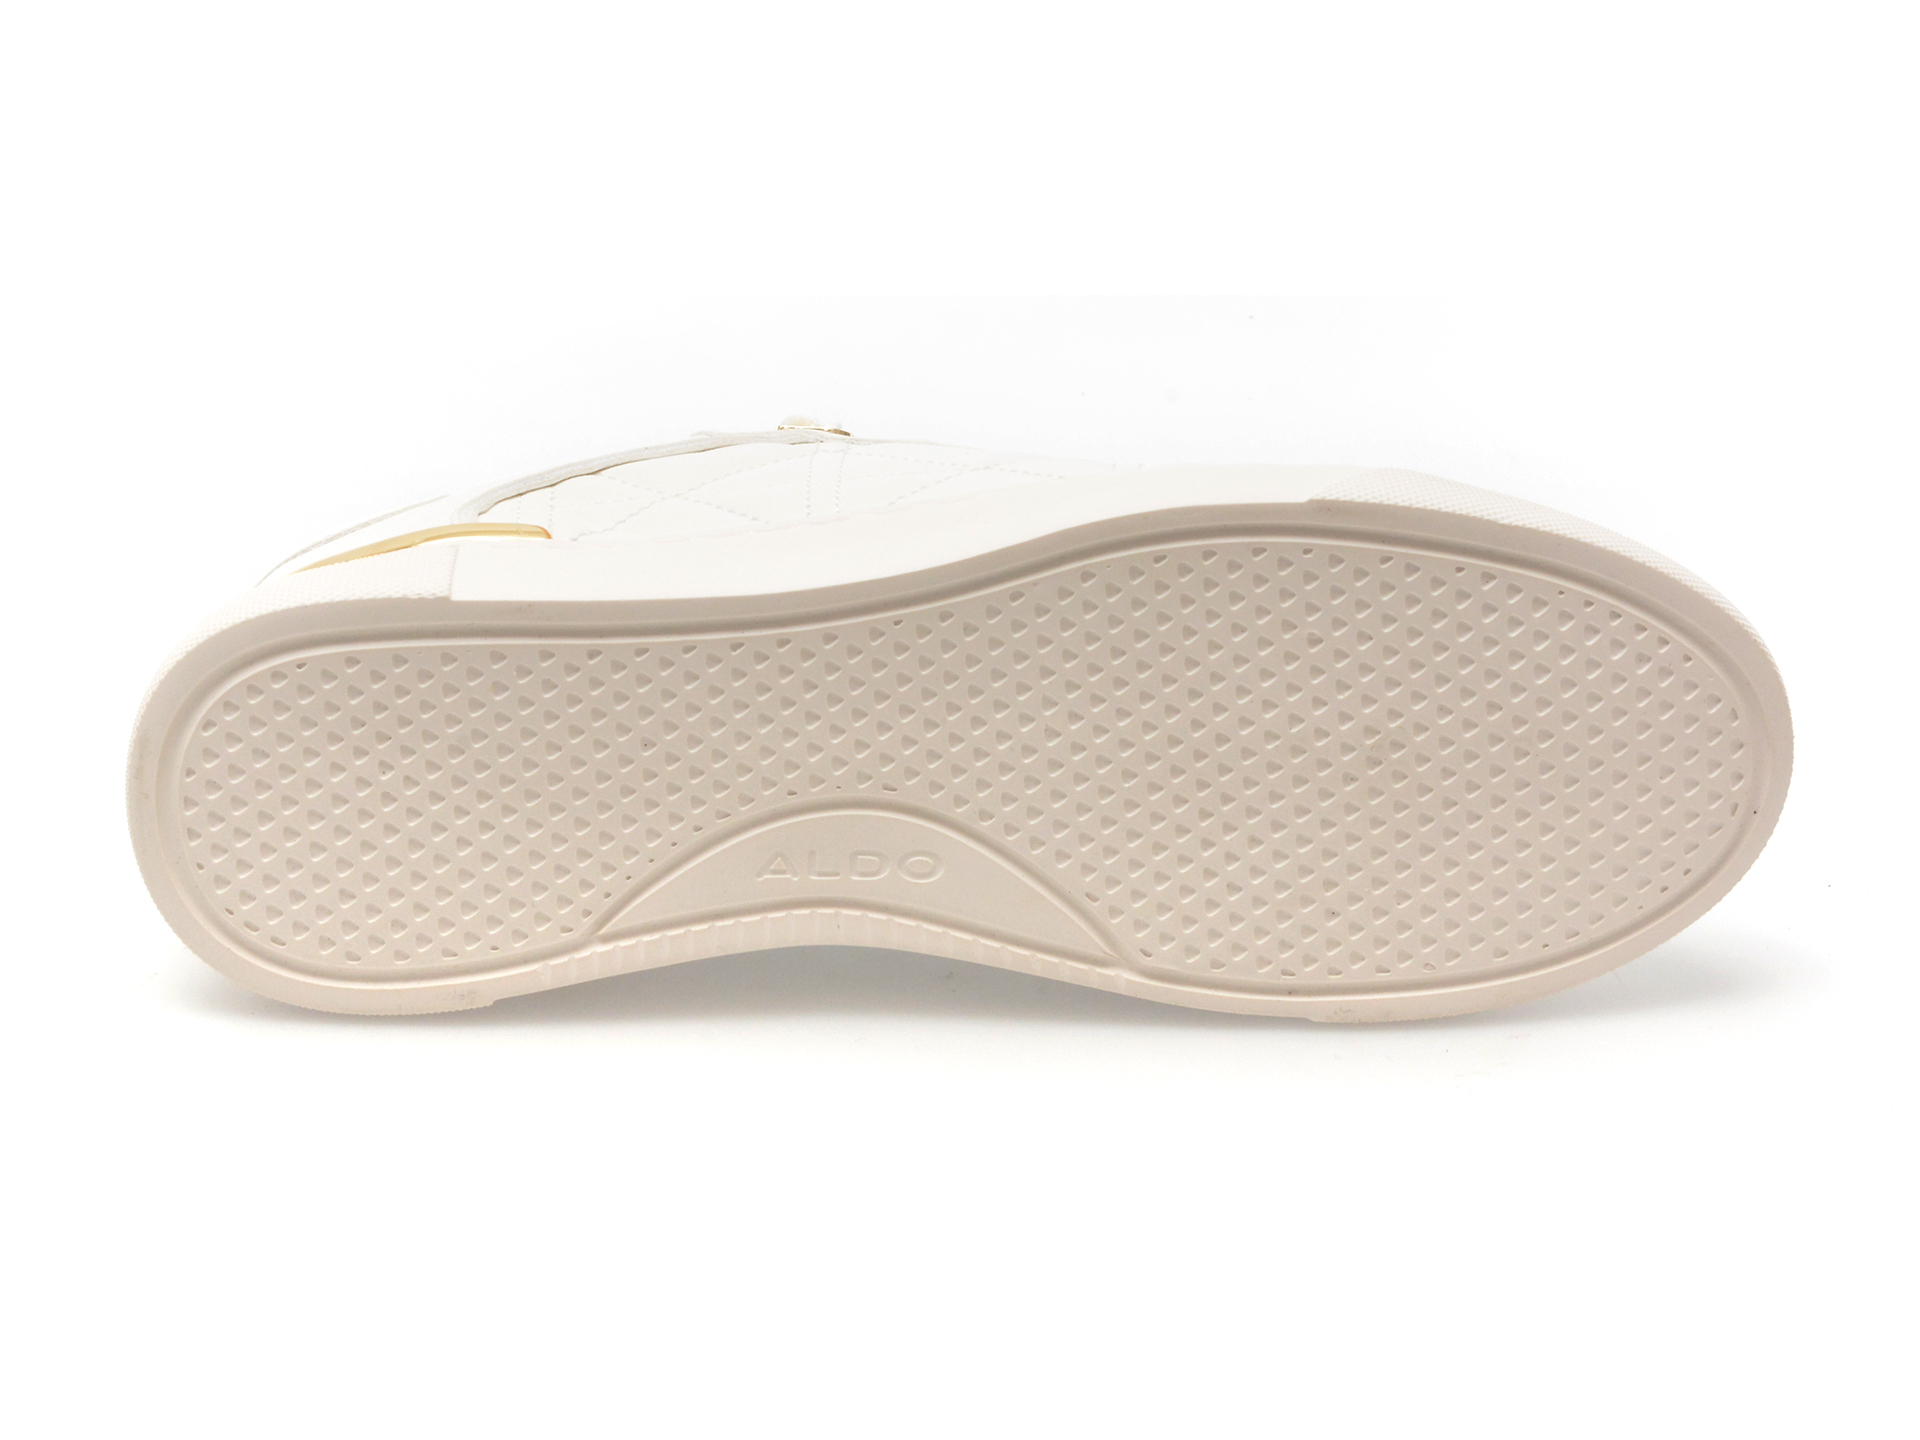 Pantofi ALDO albi, 13715317, din piele ecologica